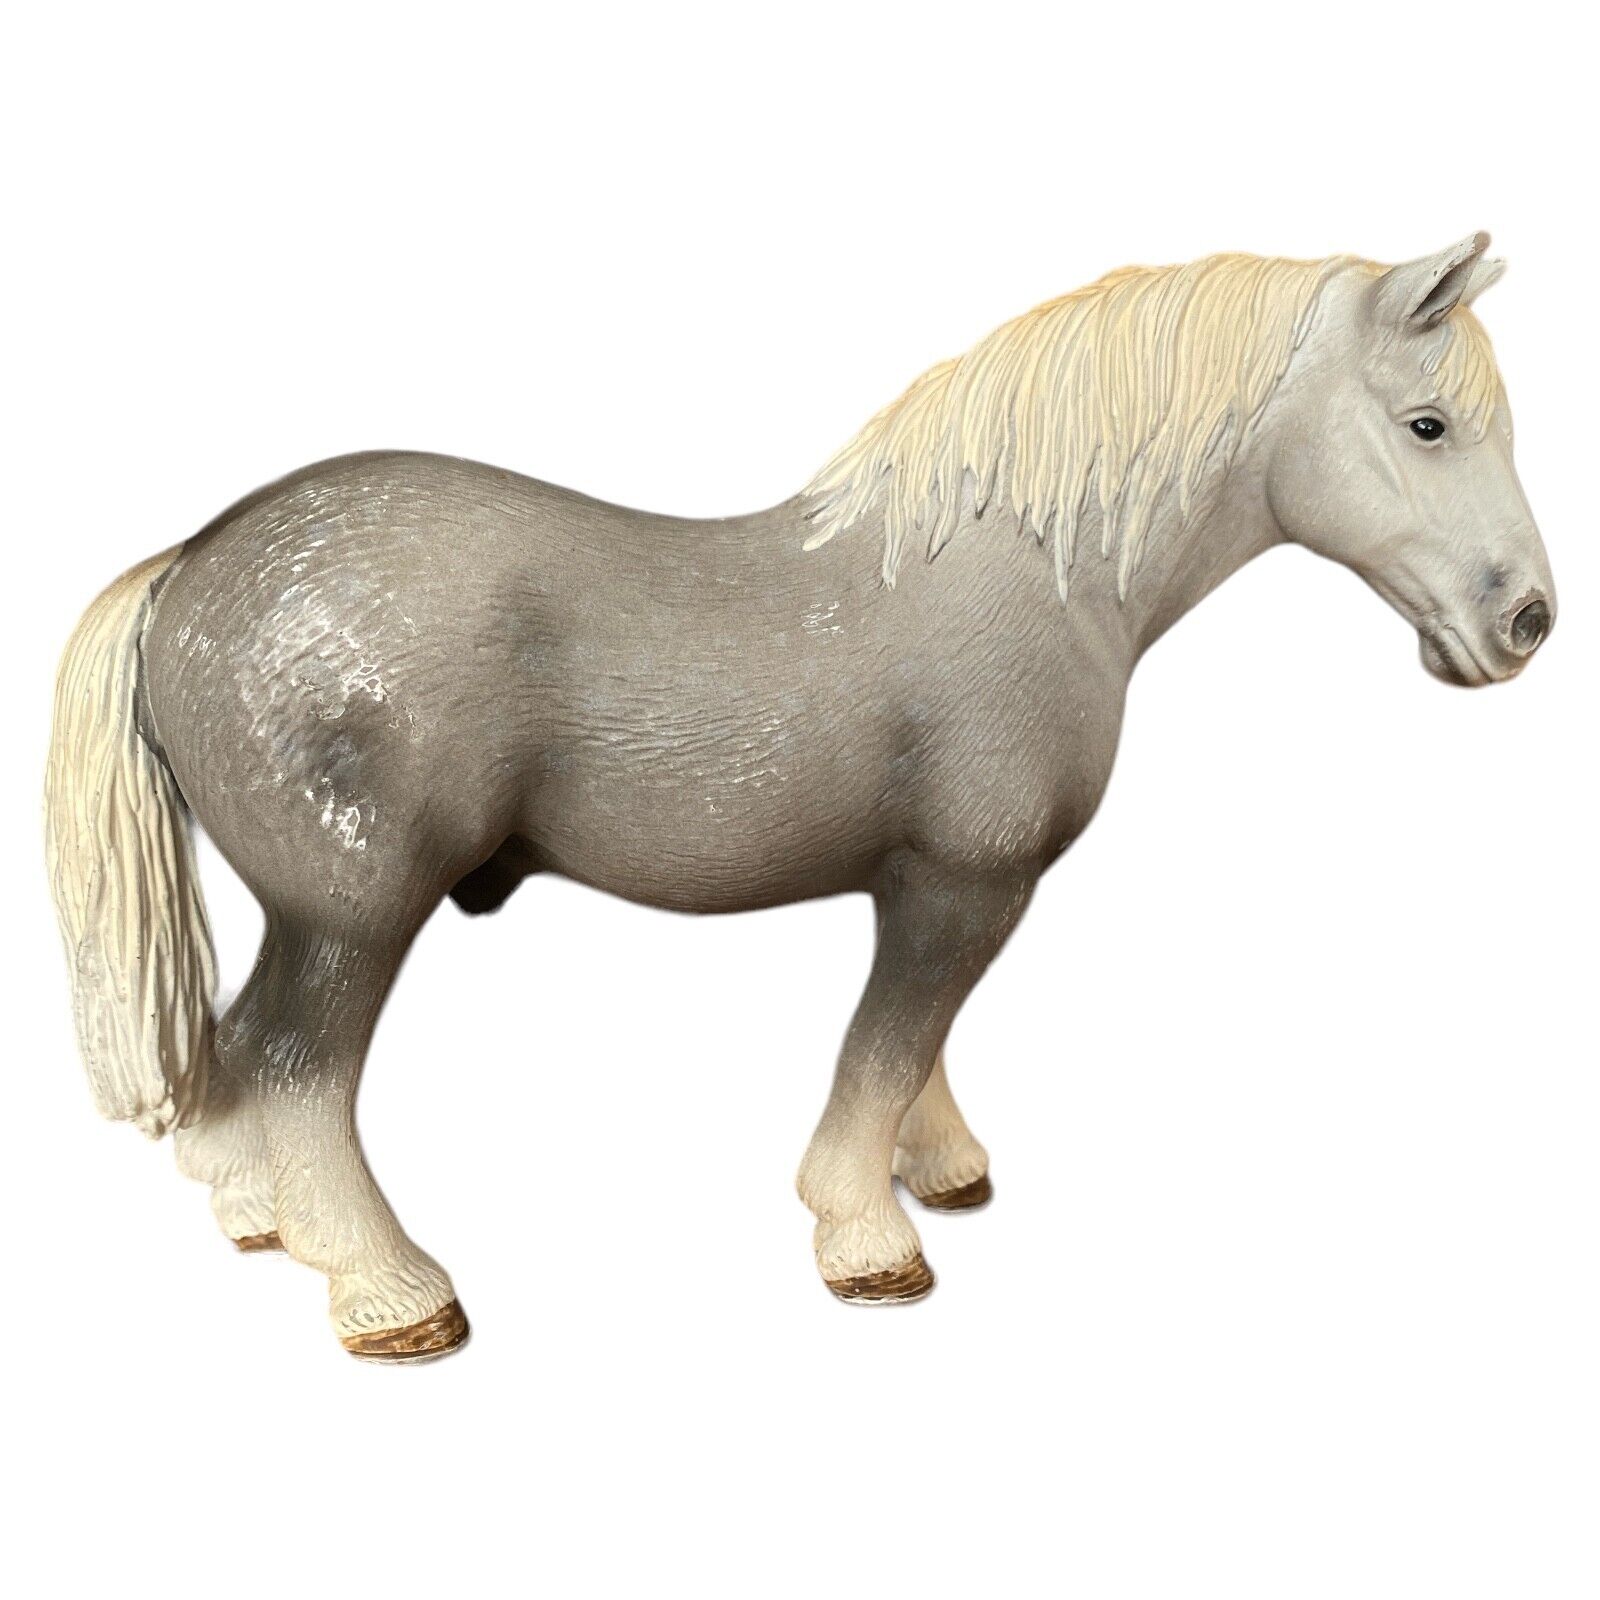 Schleich PERCHERON STALLION Dapple Grey 13623 Horse Figure 2006 Retired Toy